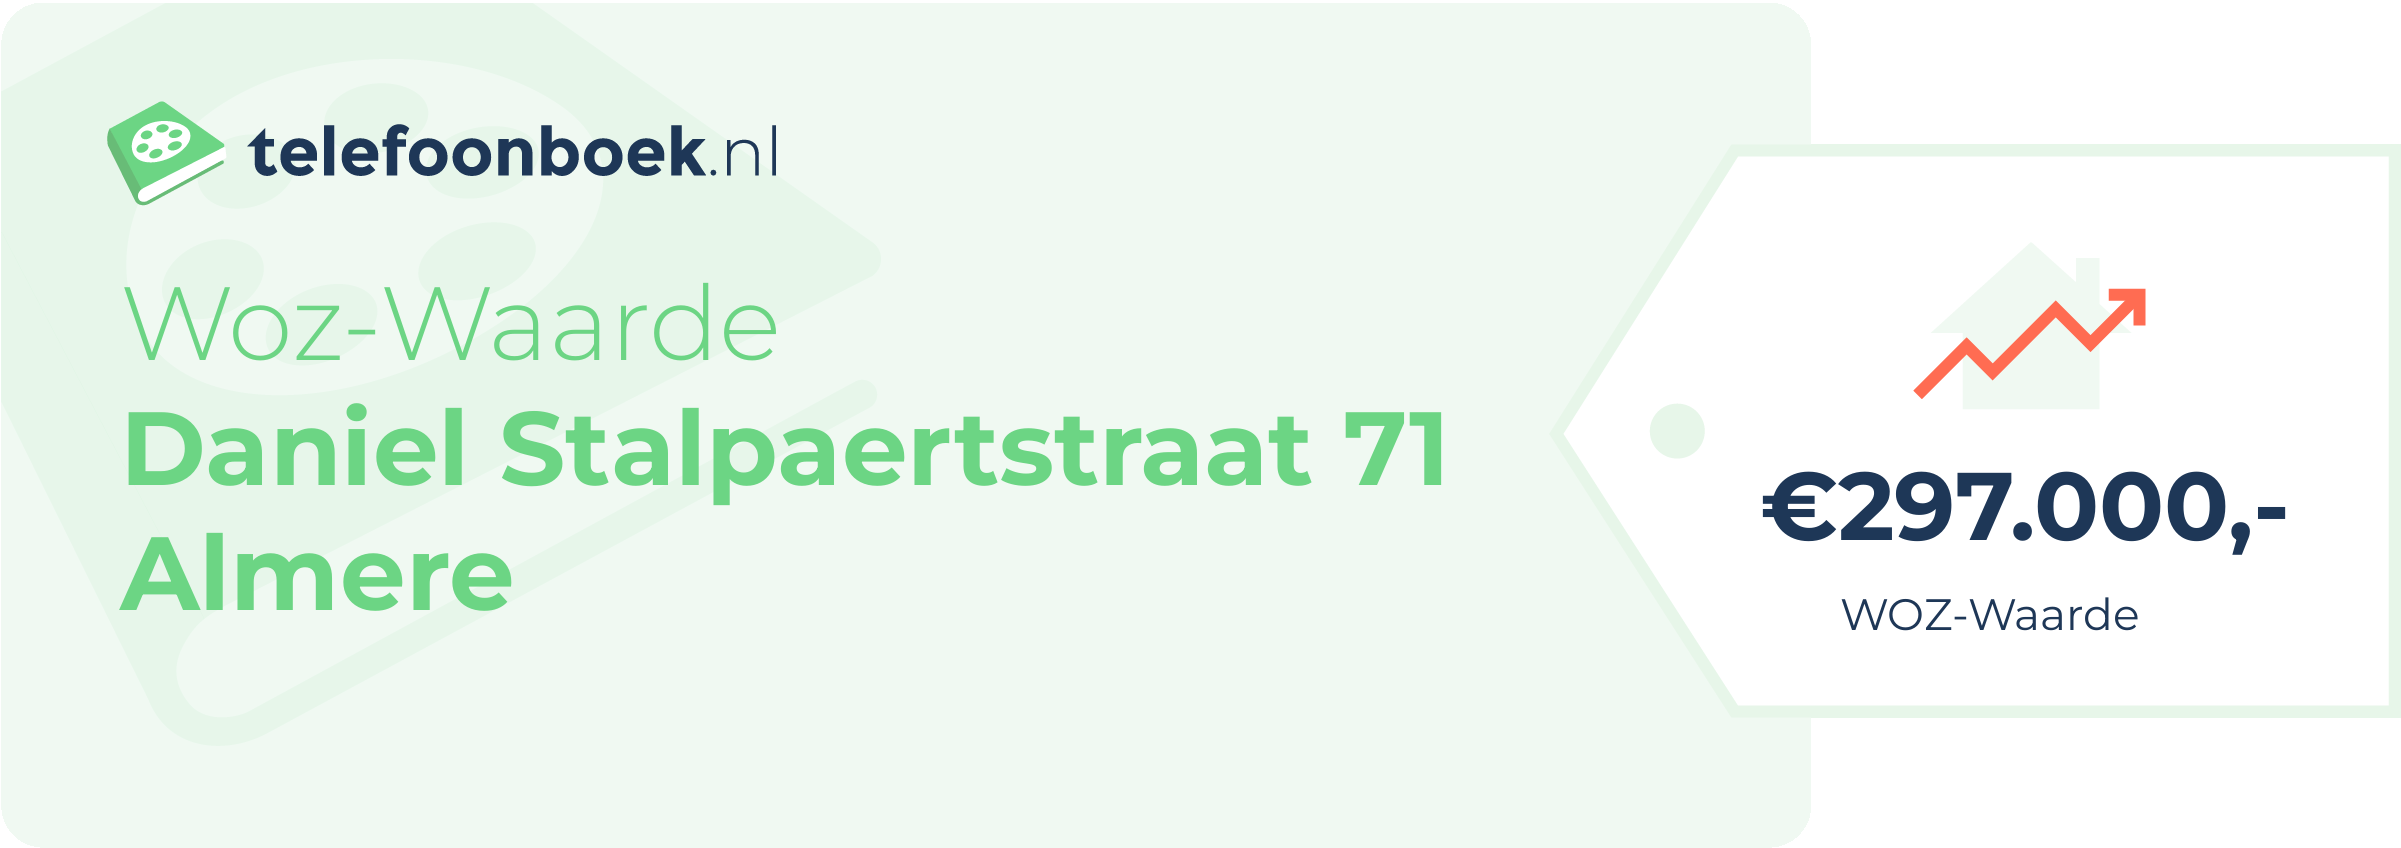 WOZ-waarde Daniel Stalpaertstraat 71 Almere